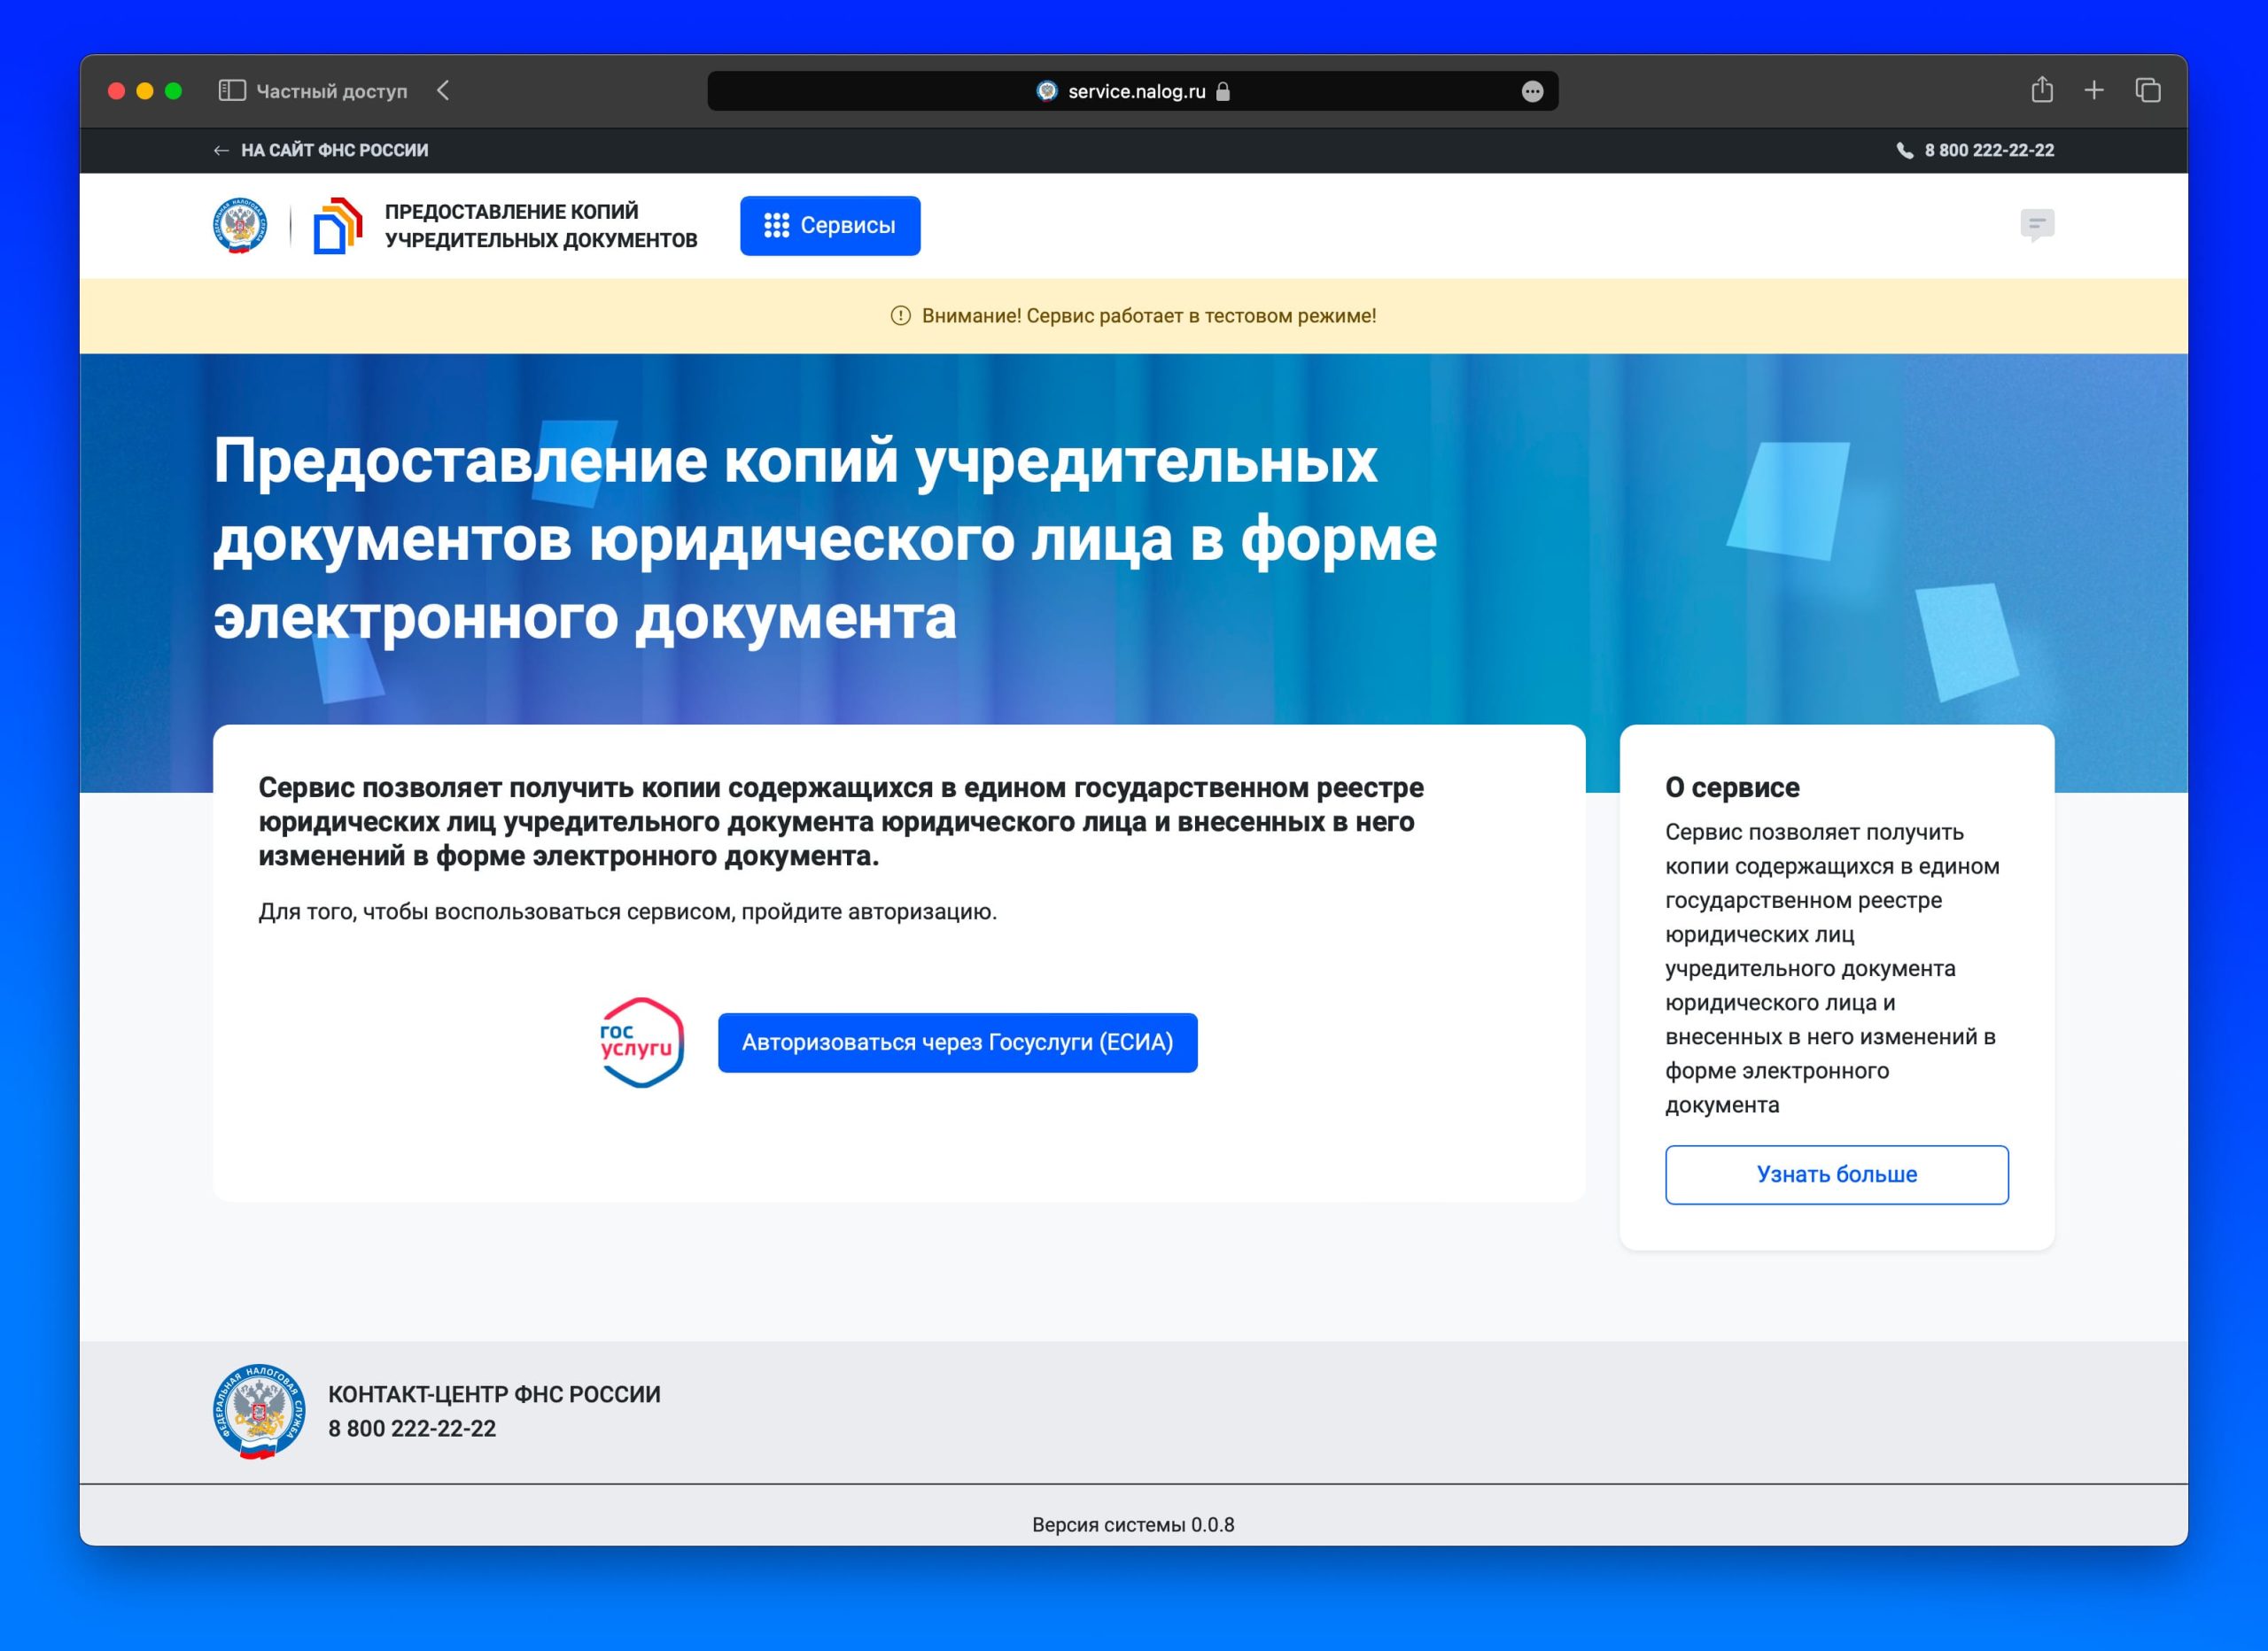 На сайте ФНС России заработал новый электронный сервис для получения учредительных документов